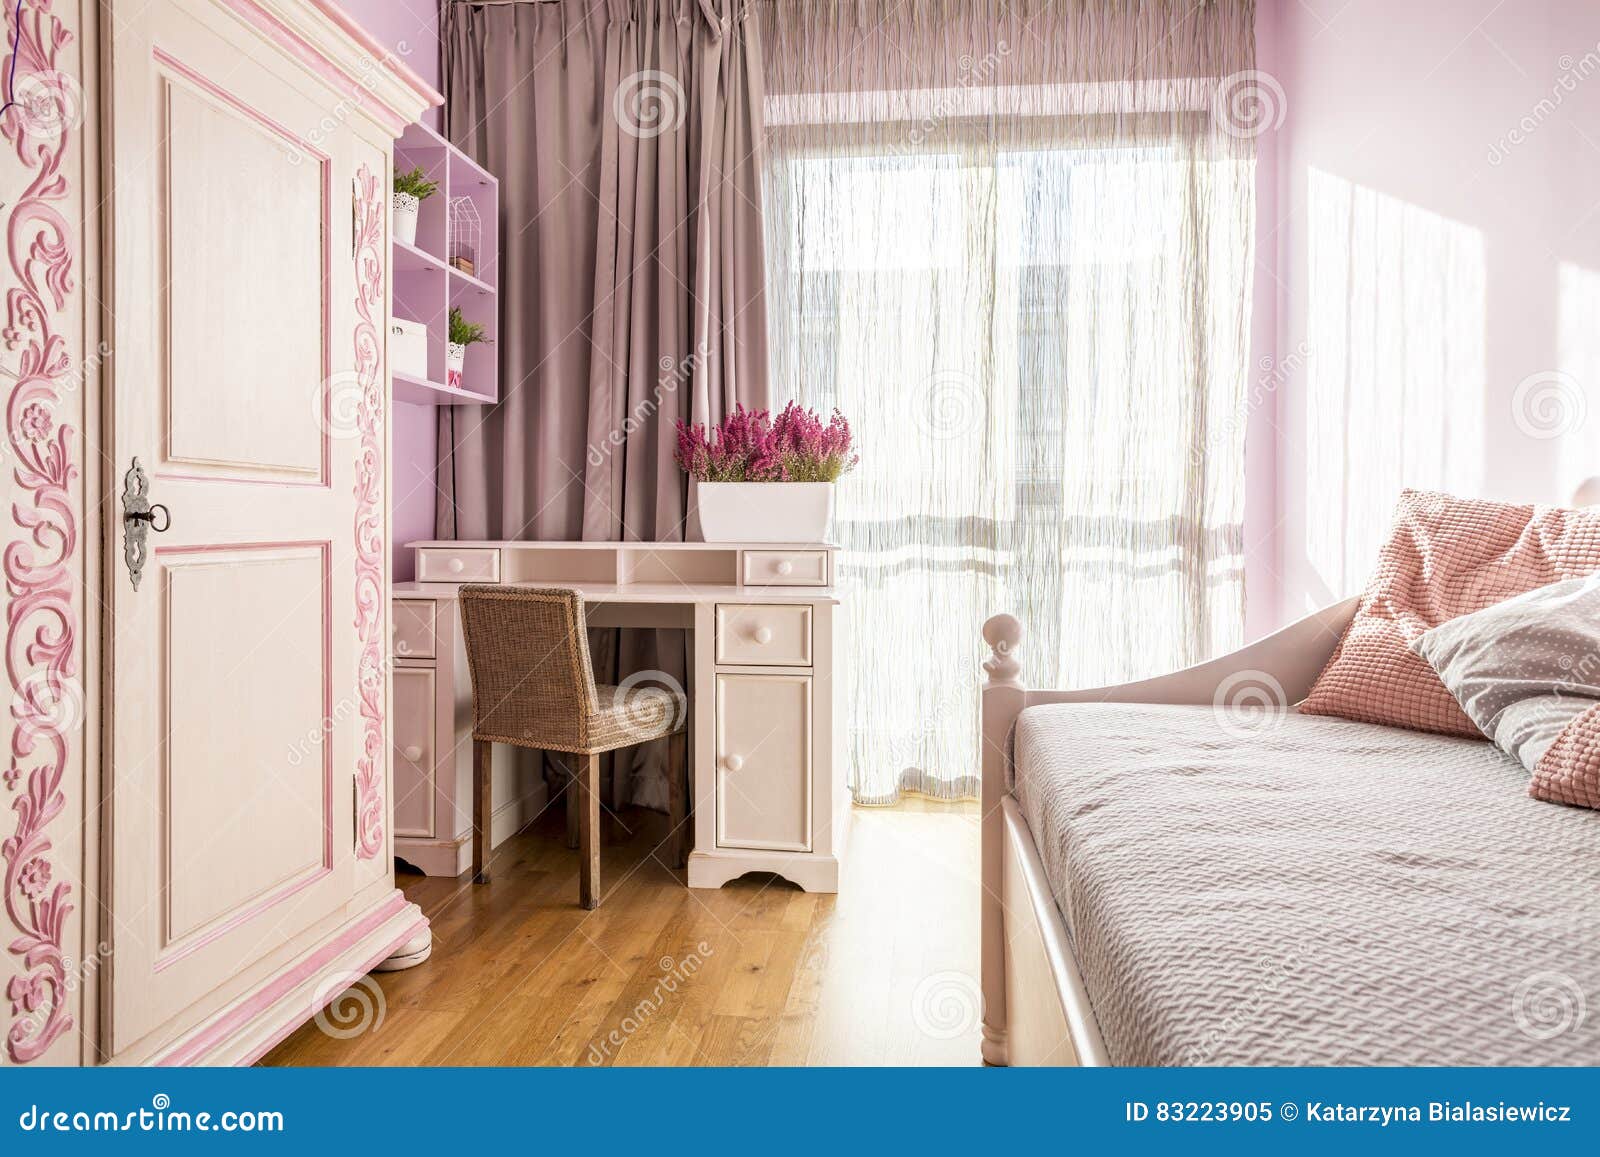 Розовая комната для девушки Стоковое Изображение - изображение .